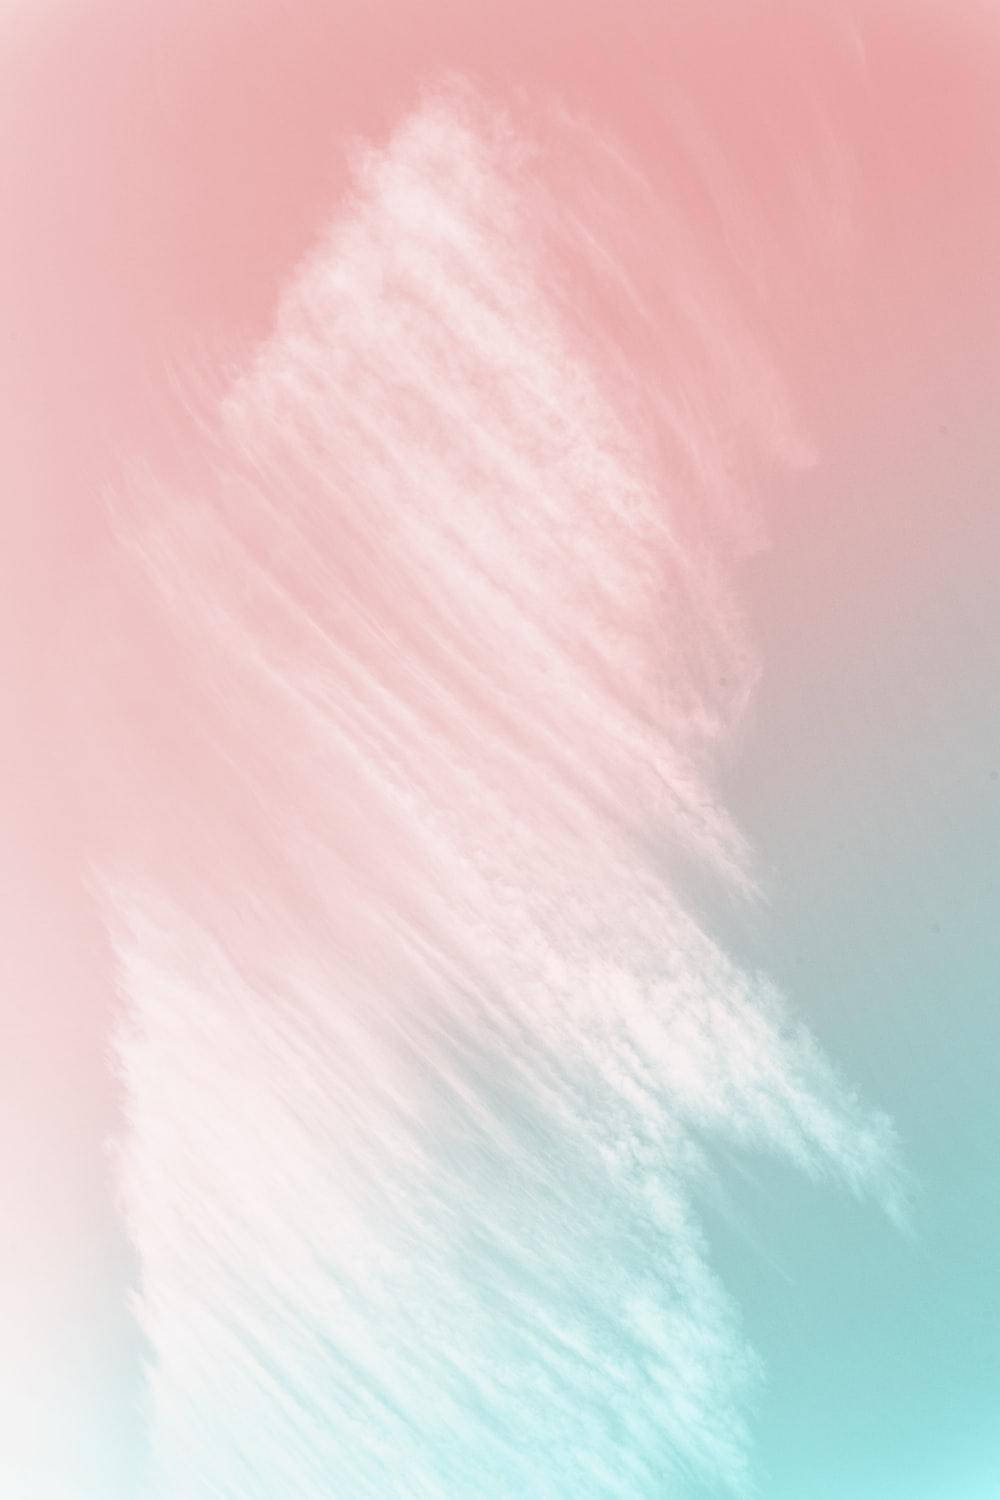 Vertikalessüßes Farbverlauf-ästhetik-hintergrundbild In Teal Wallpaper